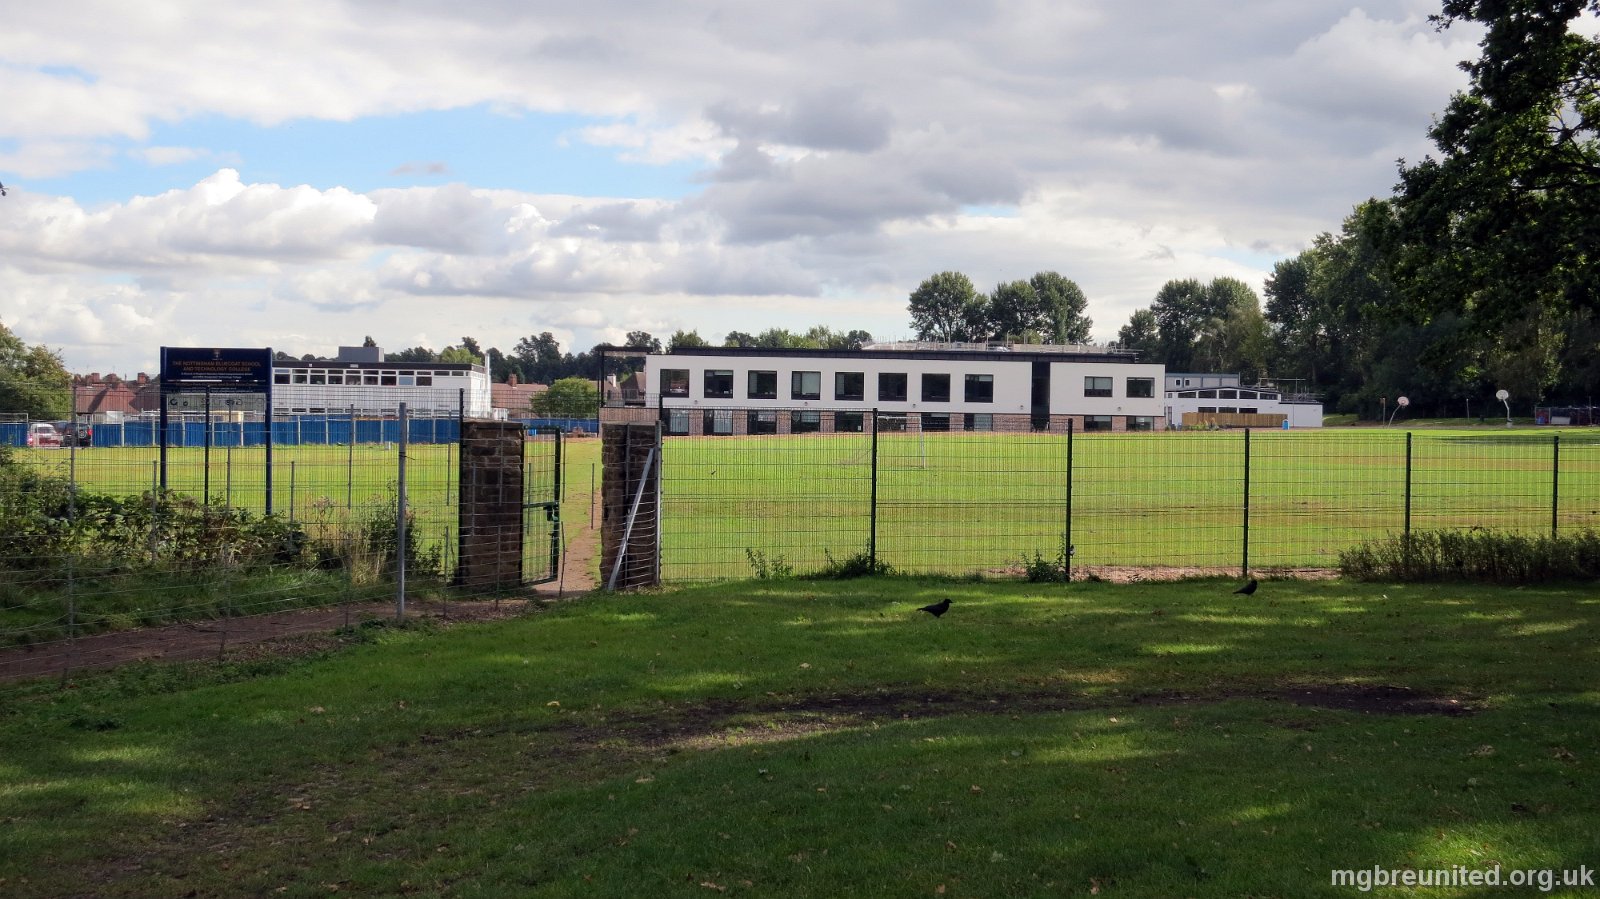 2013 09 view of Bluecoat School New Bluecoat Campas taken from Wollaton Park near Digby Fields